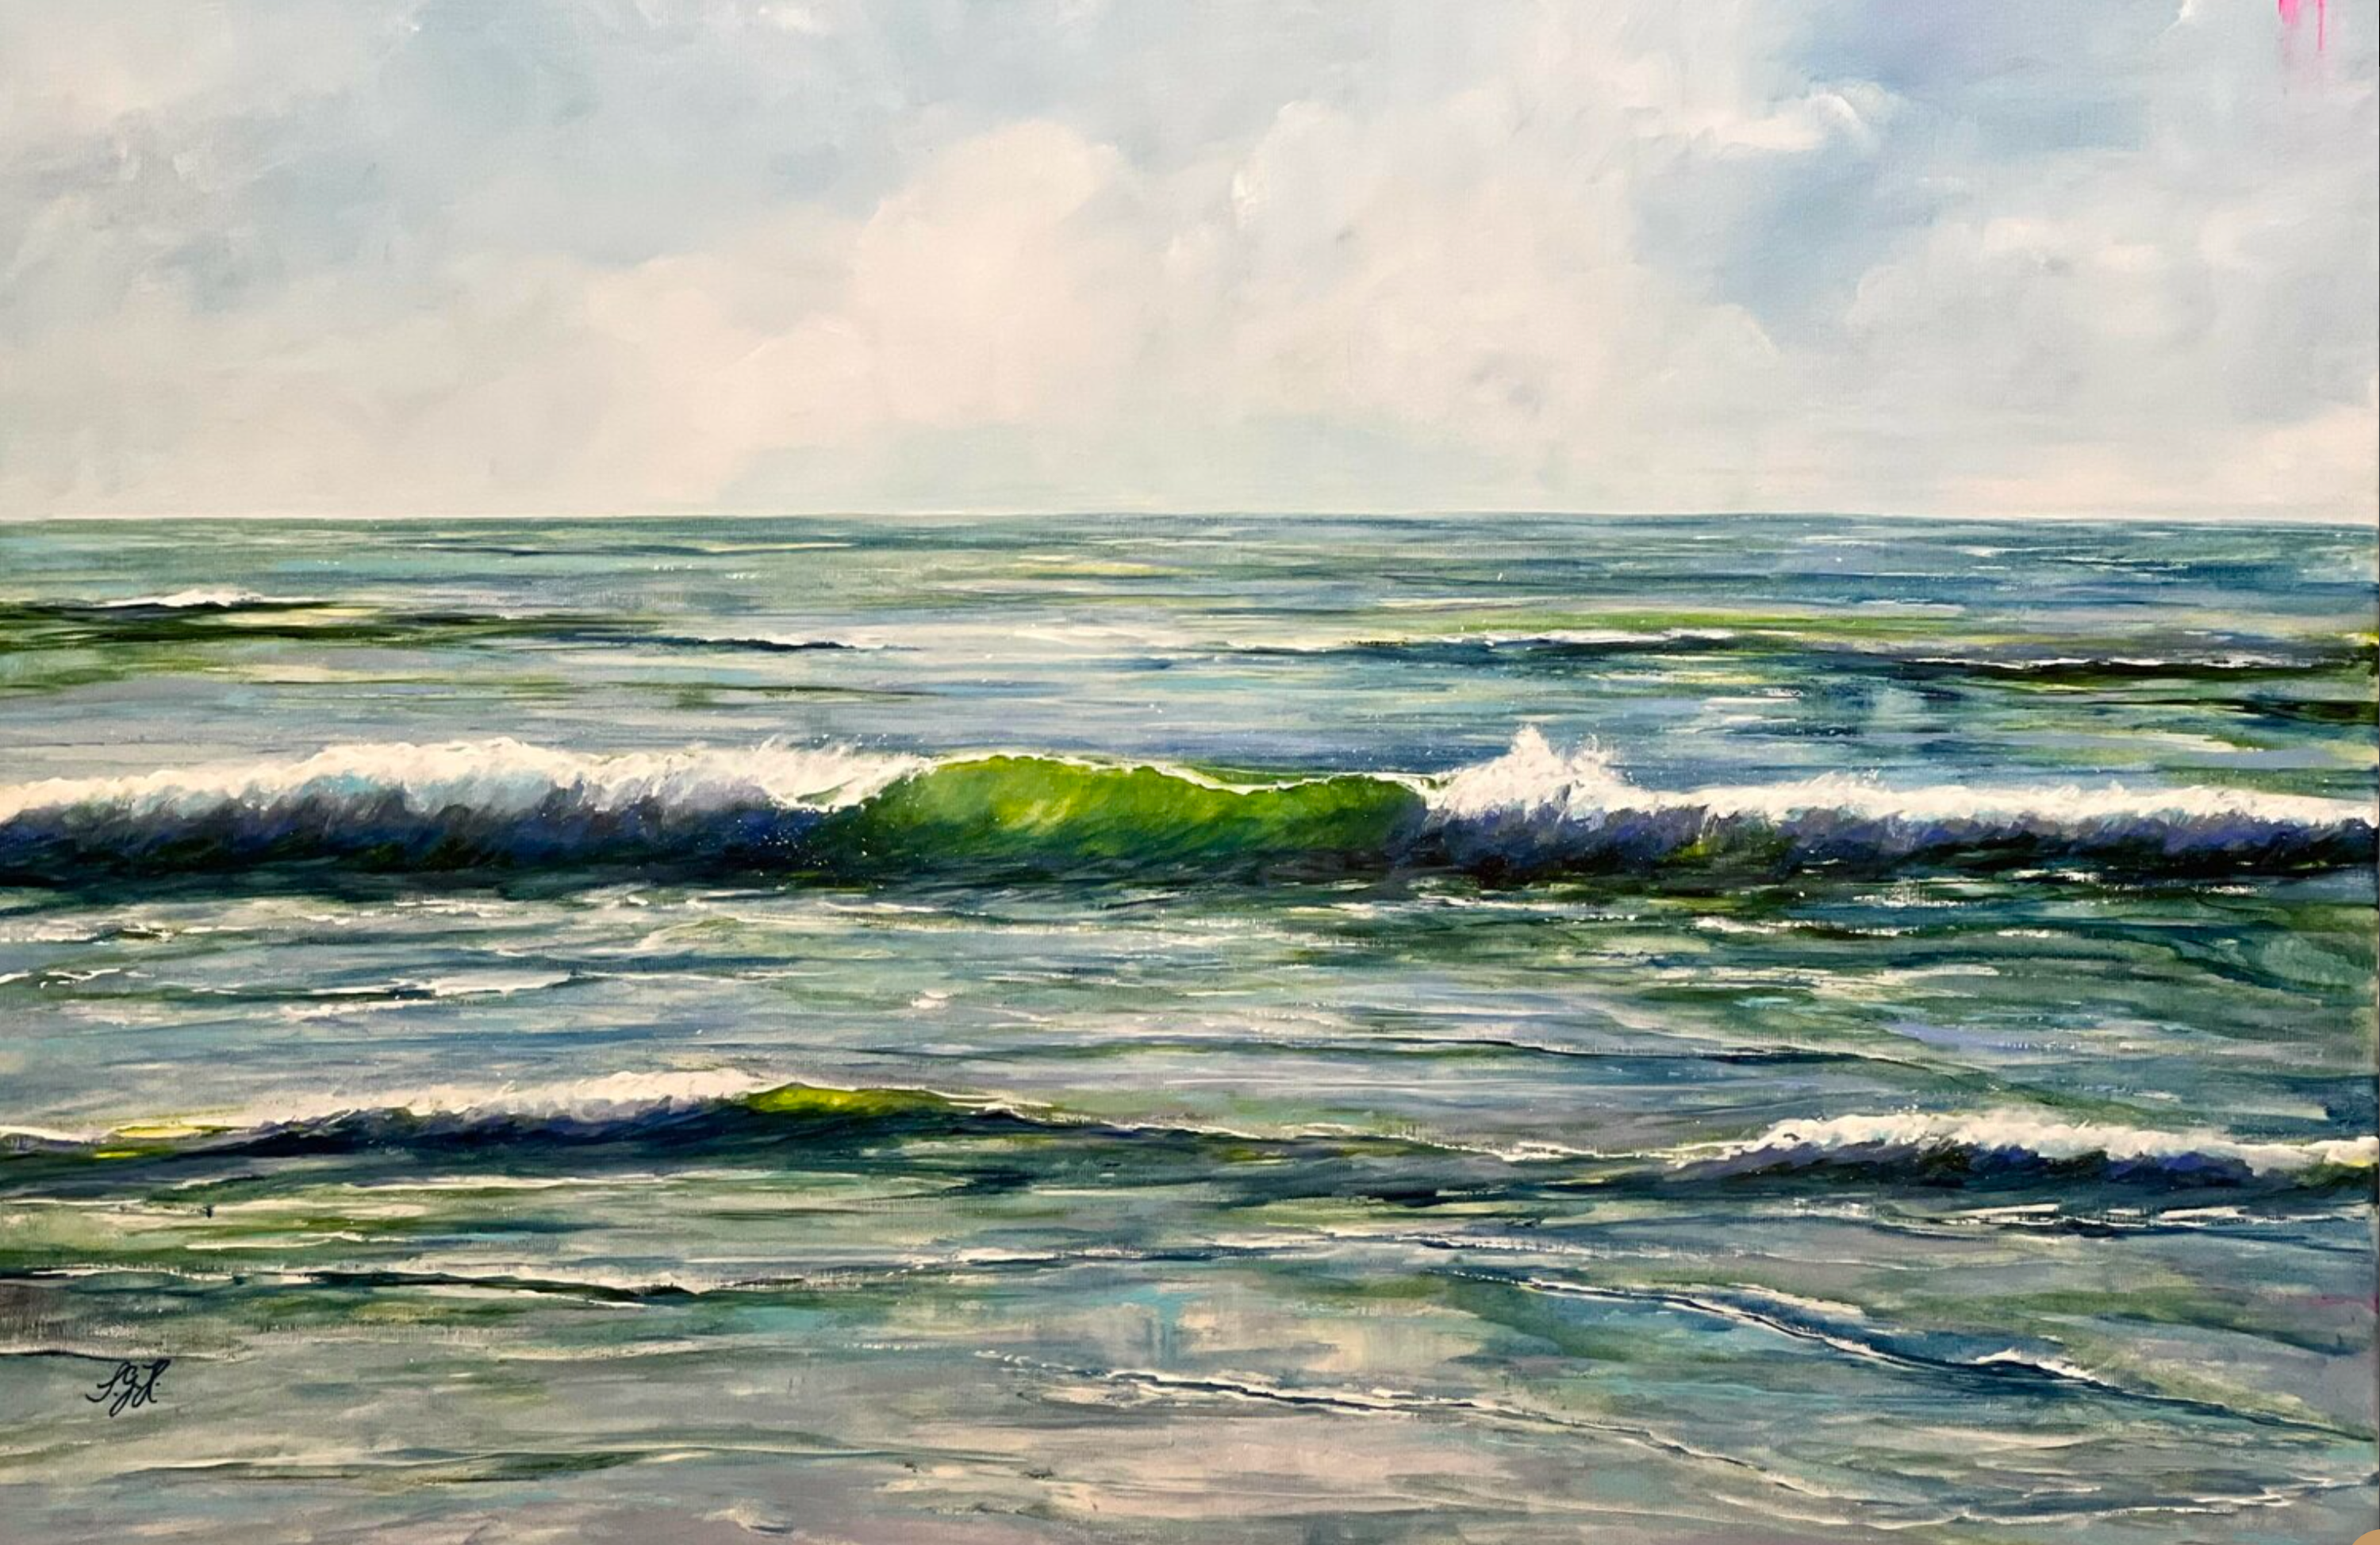 桑德拉-格布哈特-霍普夫纳的 "绿波2 "画。太阳高高地照耀着天空，使美丽的大海中的破浪看起来是半透明的绿色。这是美好的一天，在大自然中。幸福。颜色是浅绿色、深绿色、深蓝色、灰蓝色、深灰色和白色。